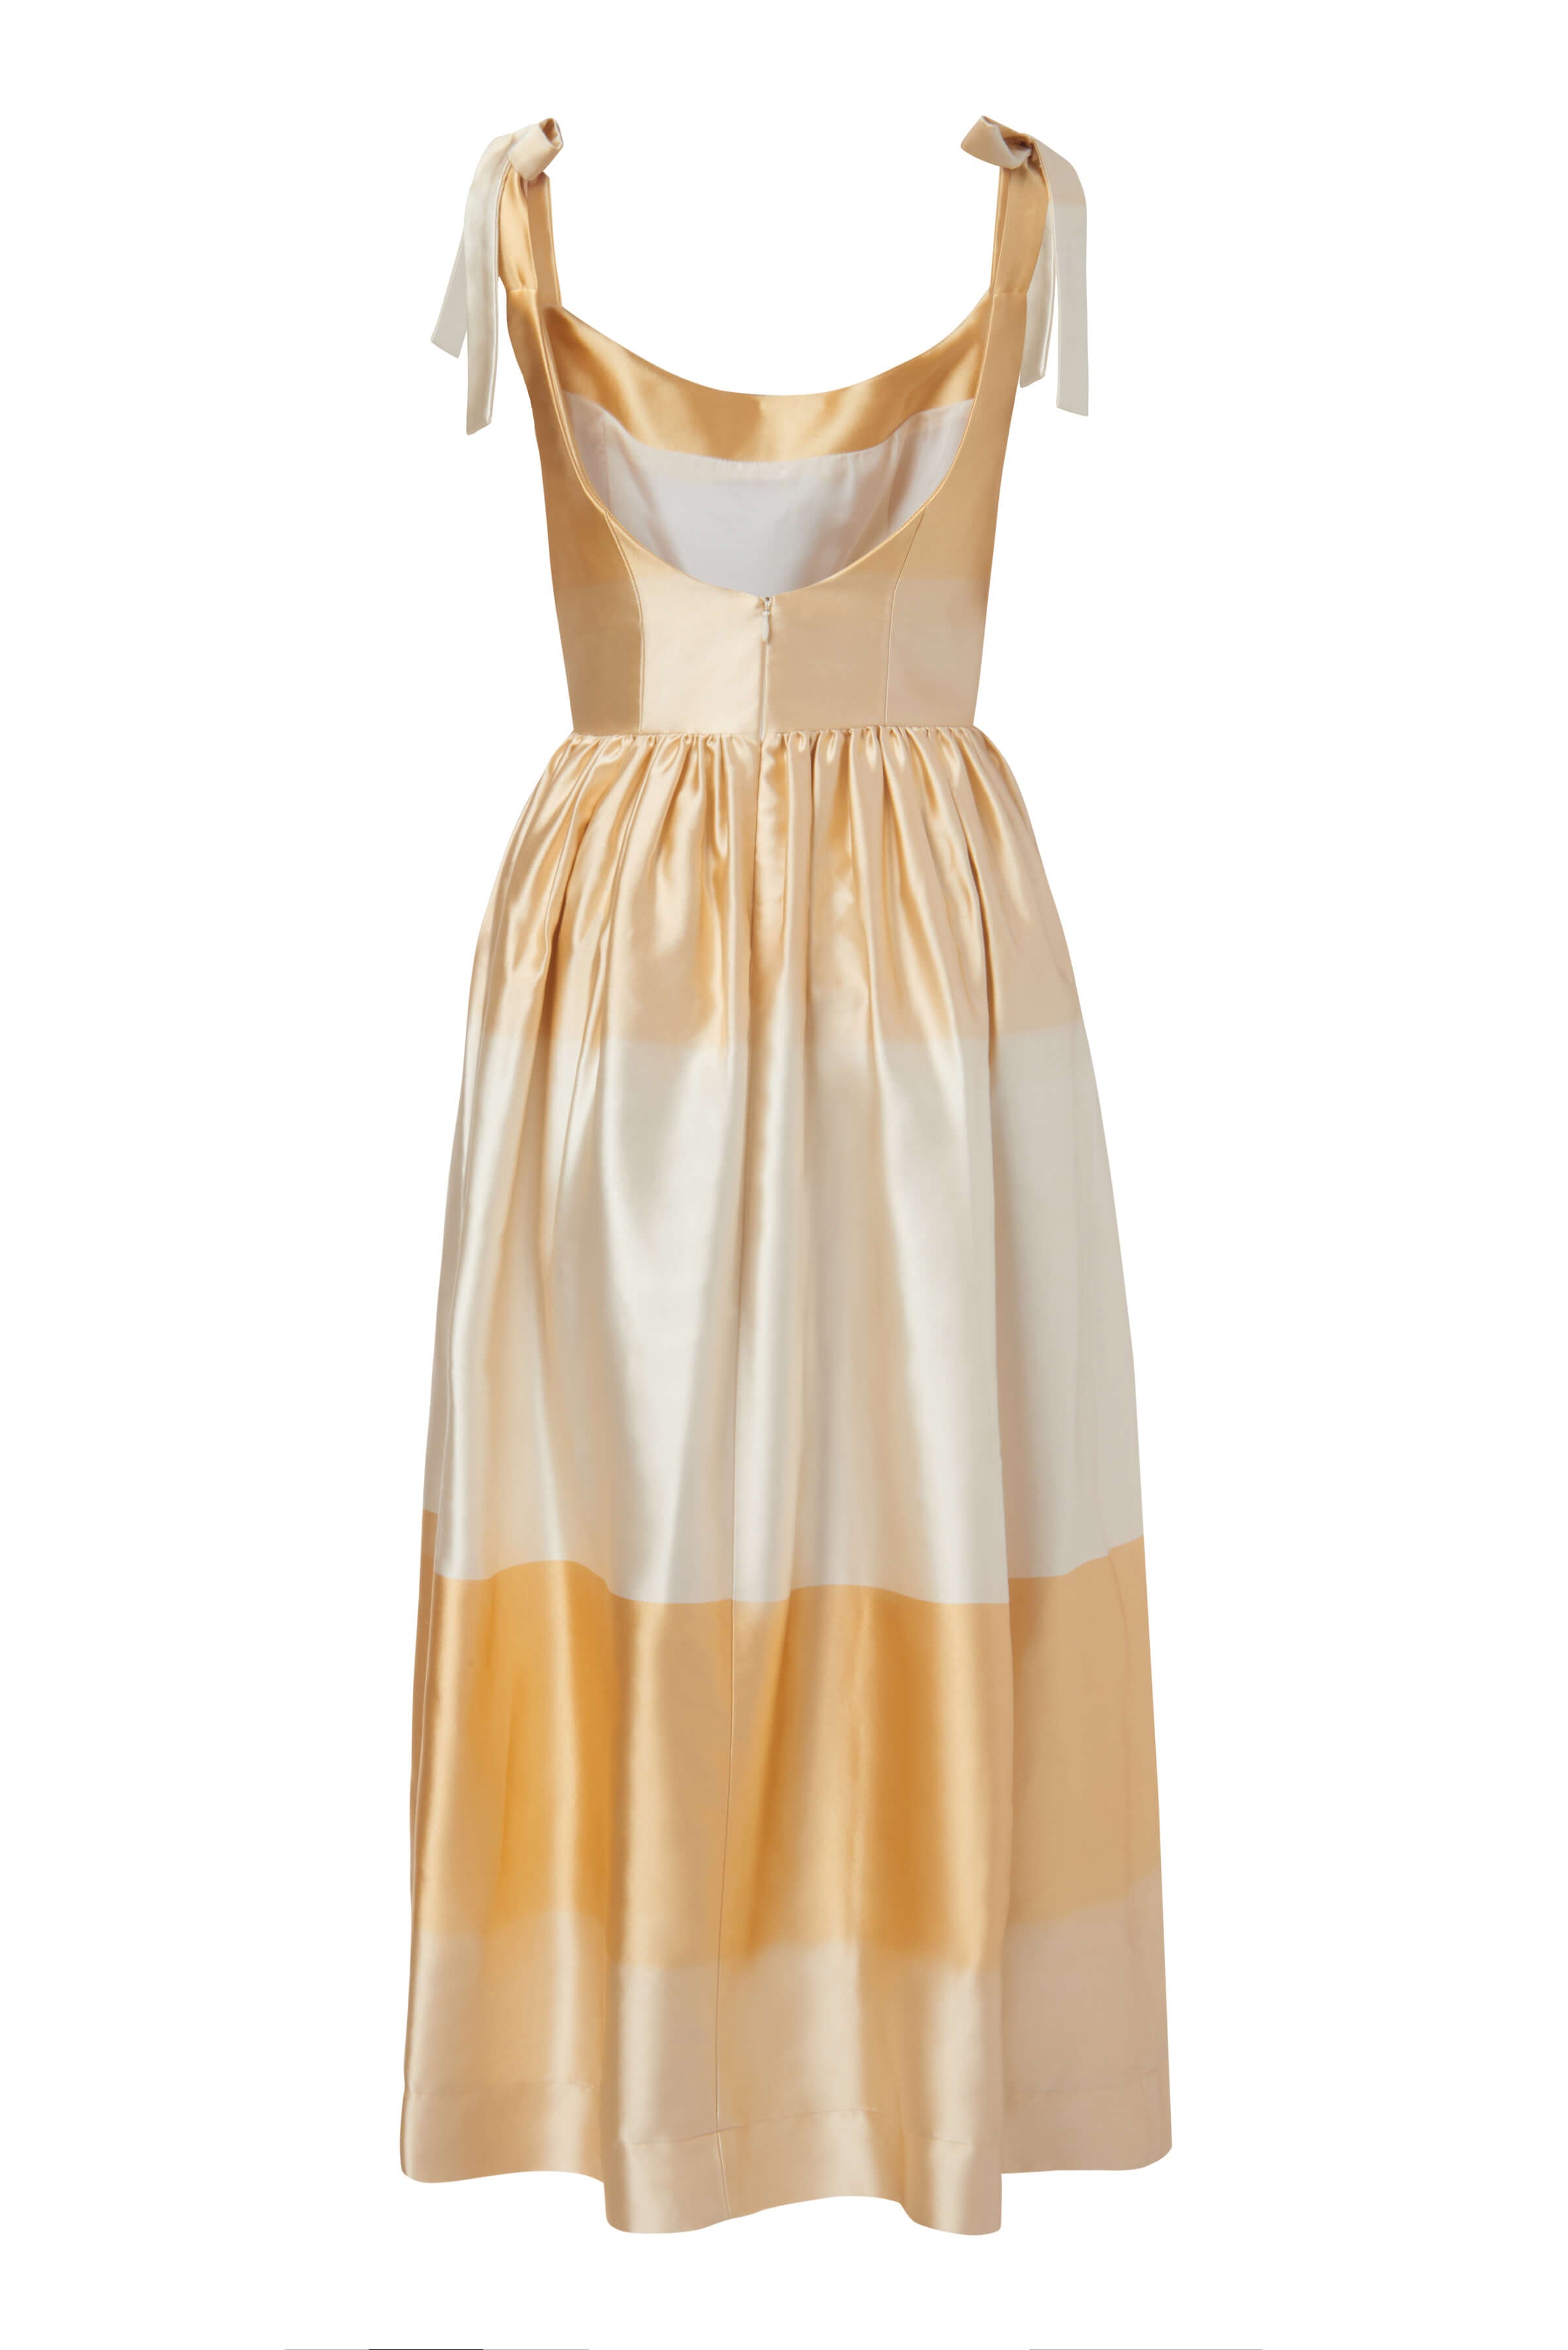 Apple Golden Ombré Dress With Tie Straps